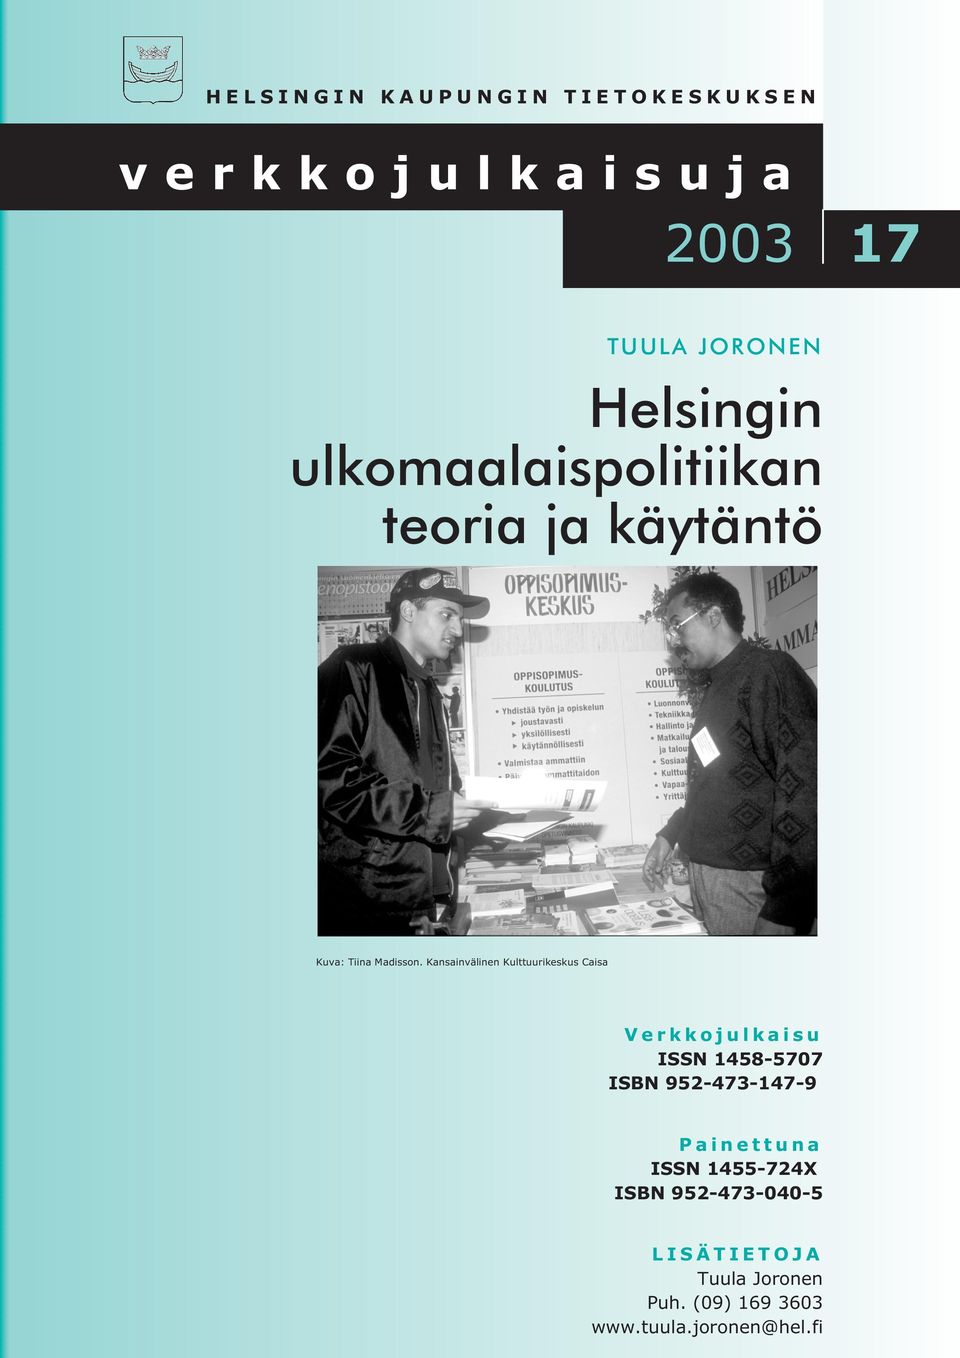 Kansainvälinen Kulttuurikeskus Caisa Verkkojulkaisu ISSN 1458-5707 ISBN 952-473-147-9